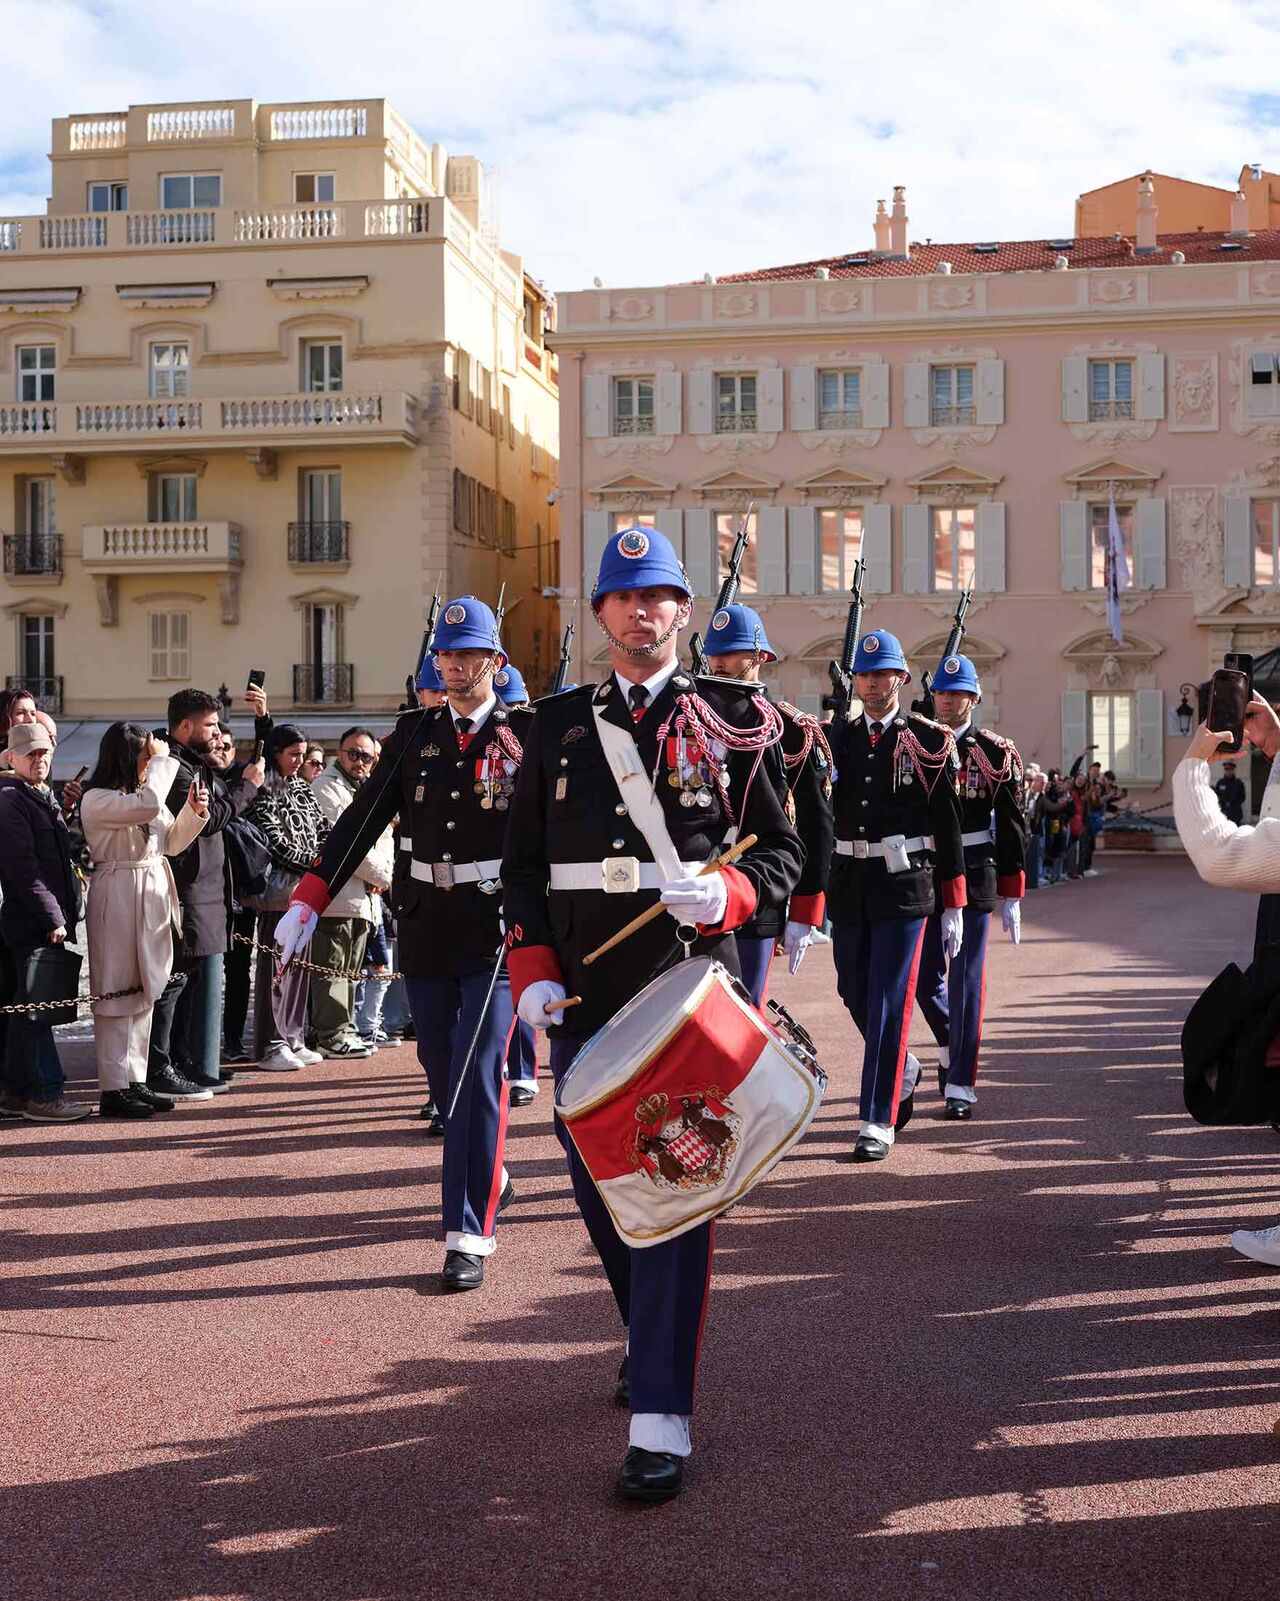 Παρέλαση φρουρών μπροστά από το παλάτι Πηγή: Eleonora Strano για το Bloomberg Businessweek